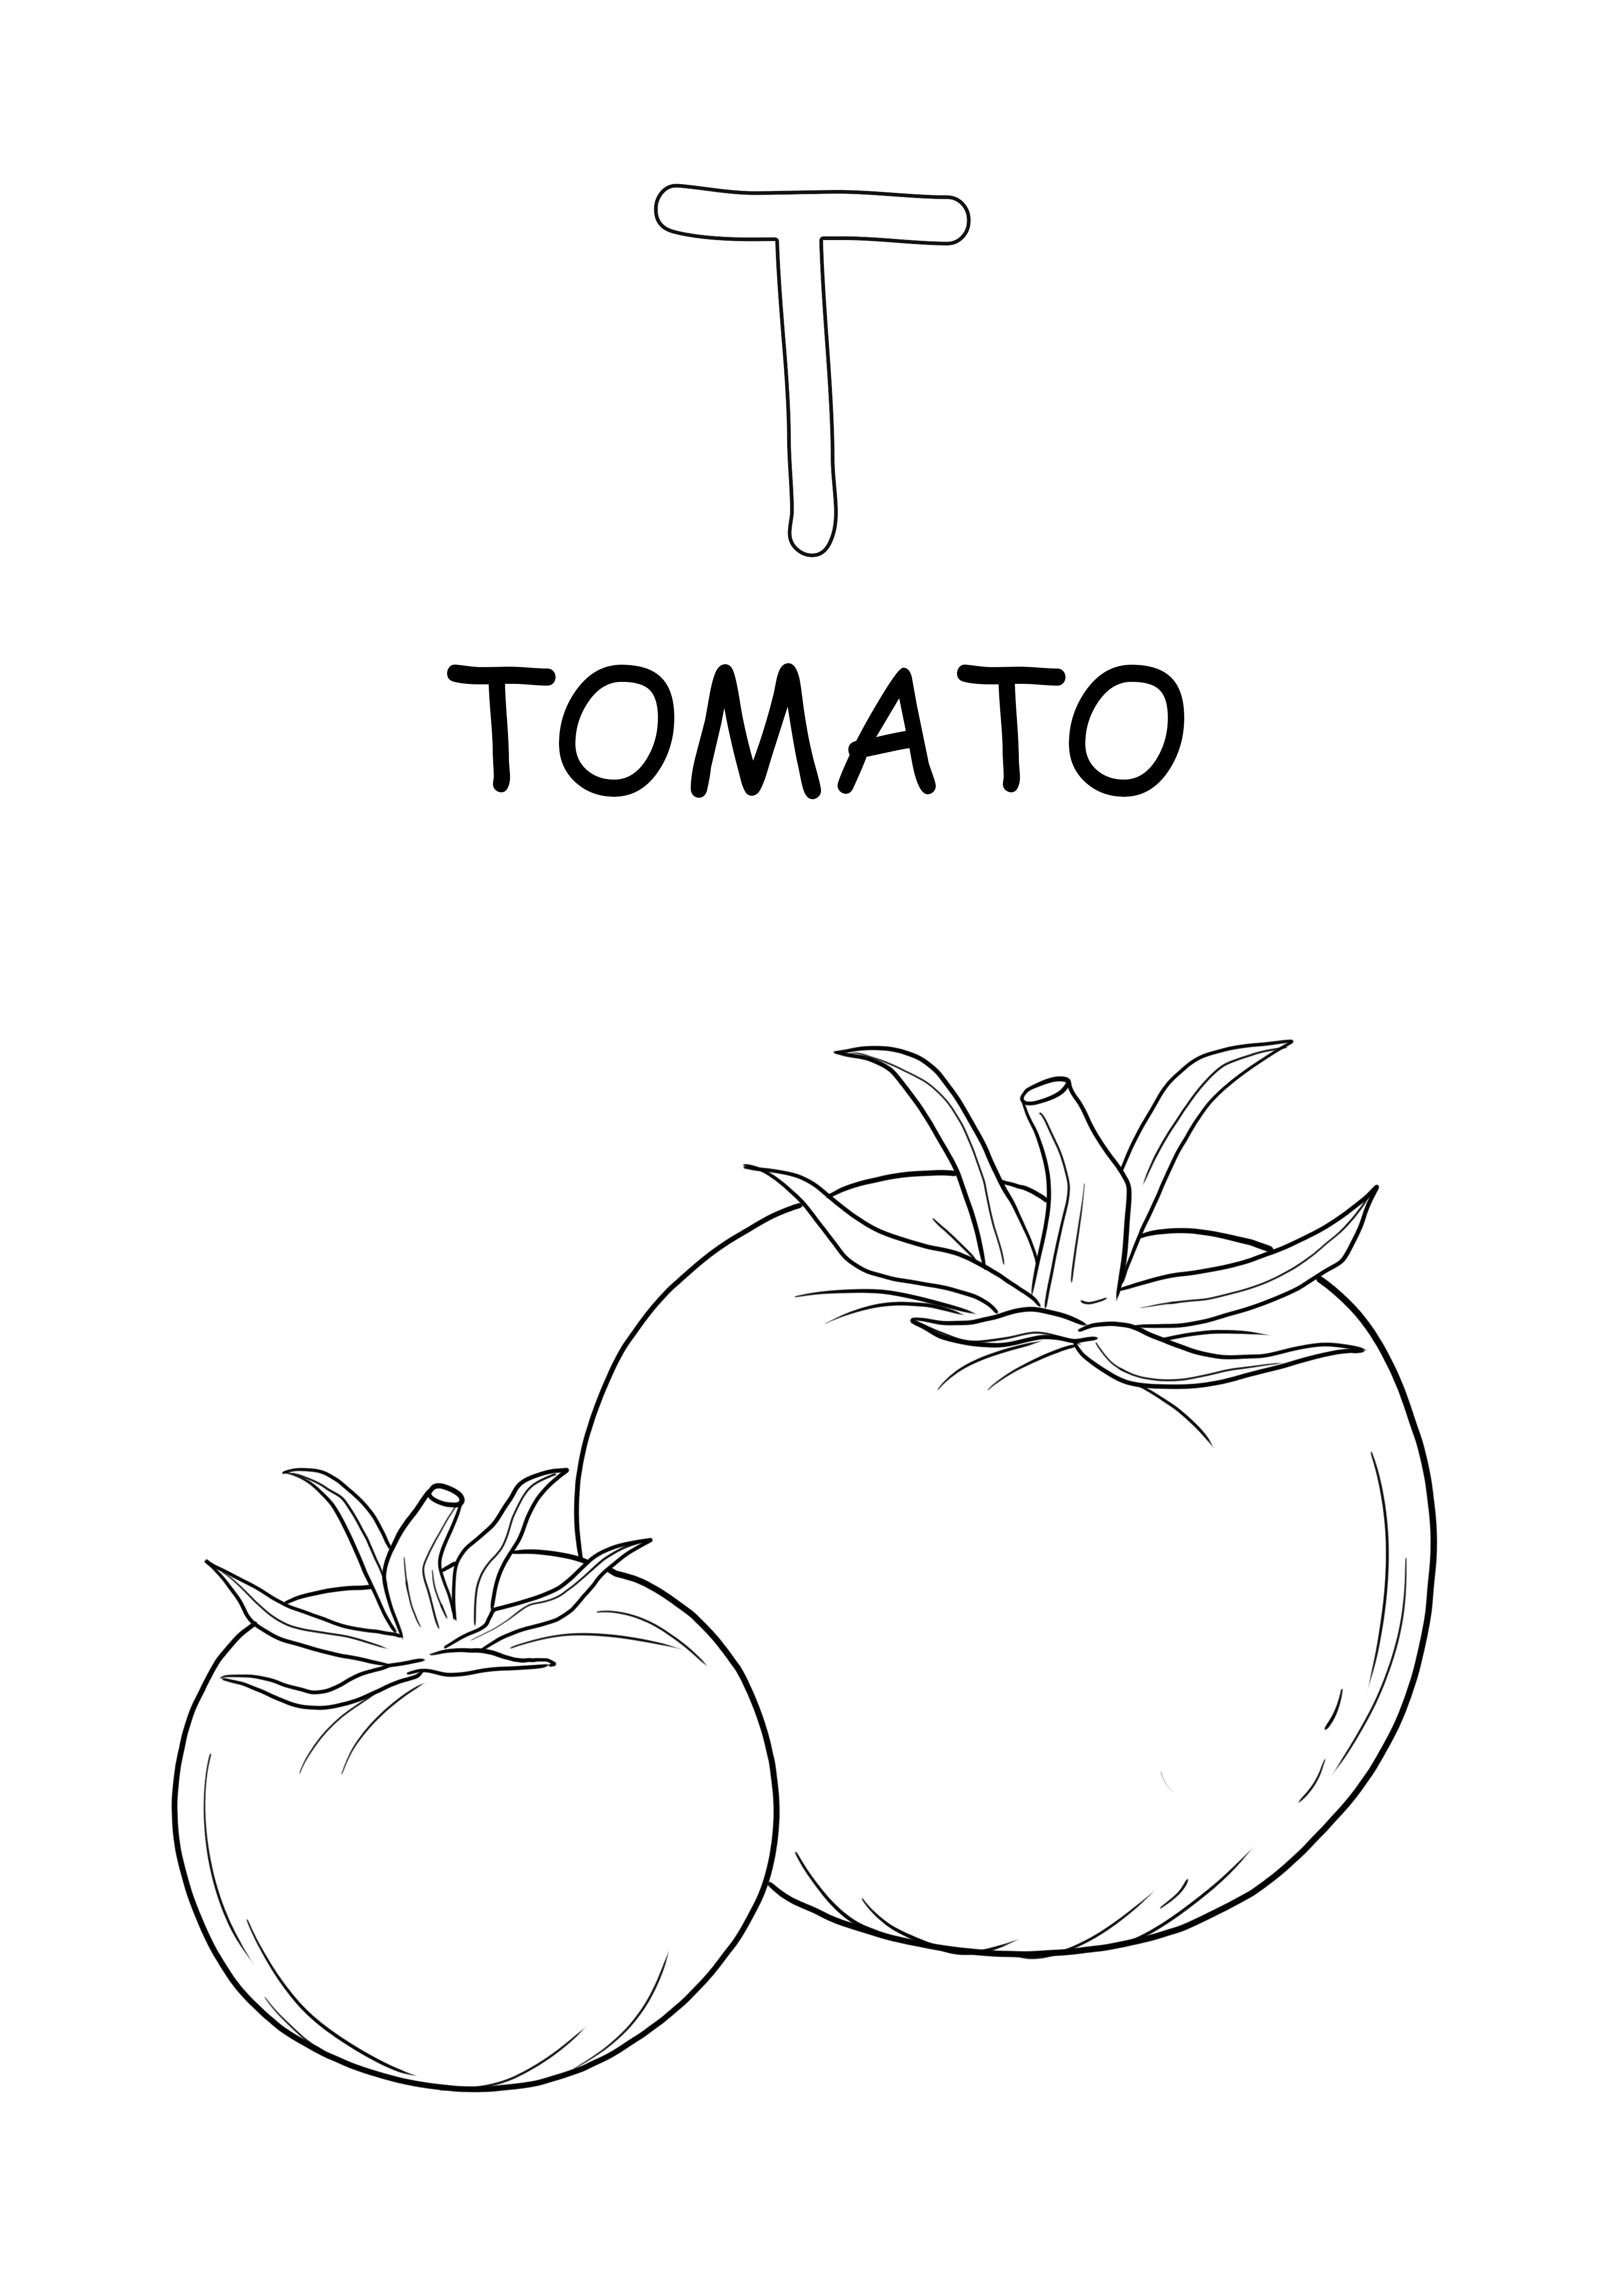 Tomatenwoord in hoofdletters en T-letters gratis te downloaden en eenvoudig in te kleuren kleurplaat